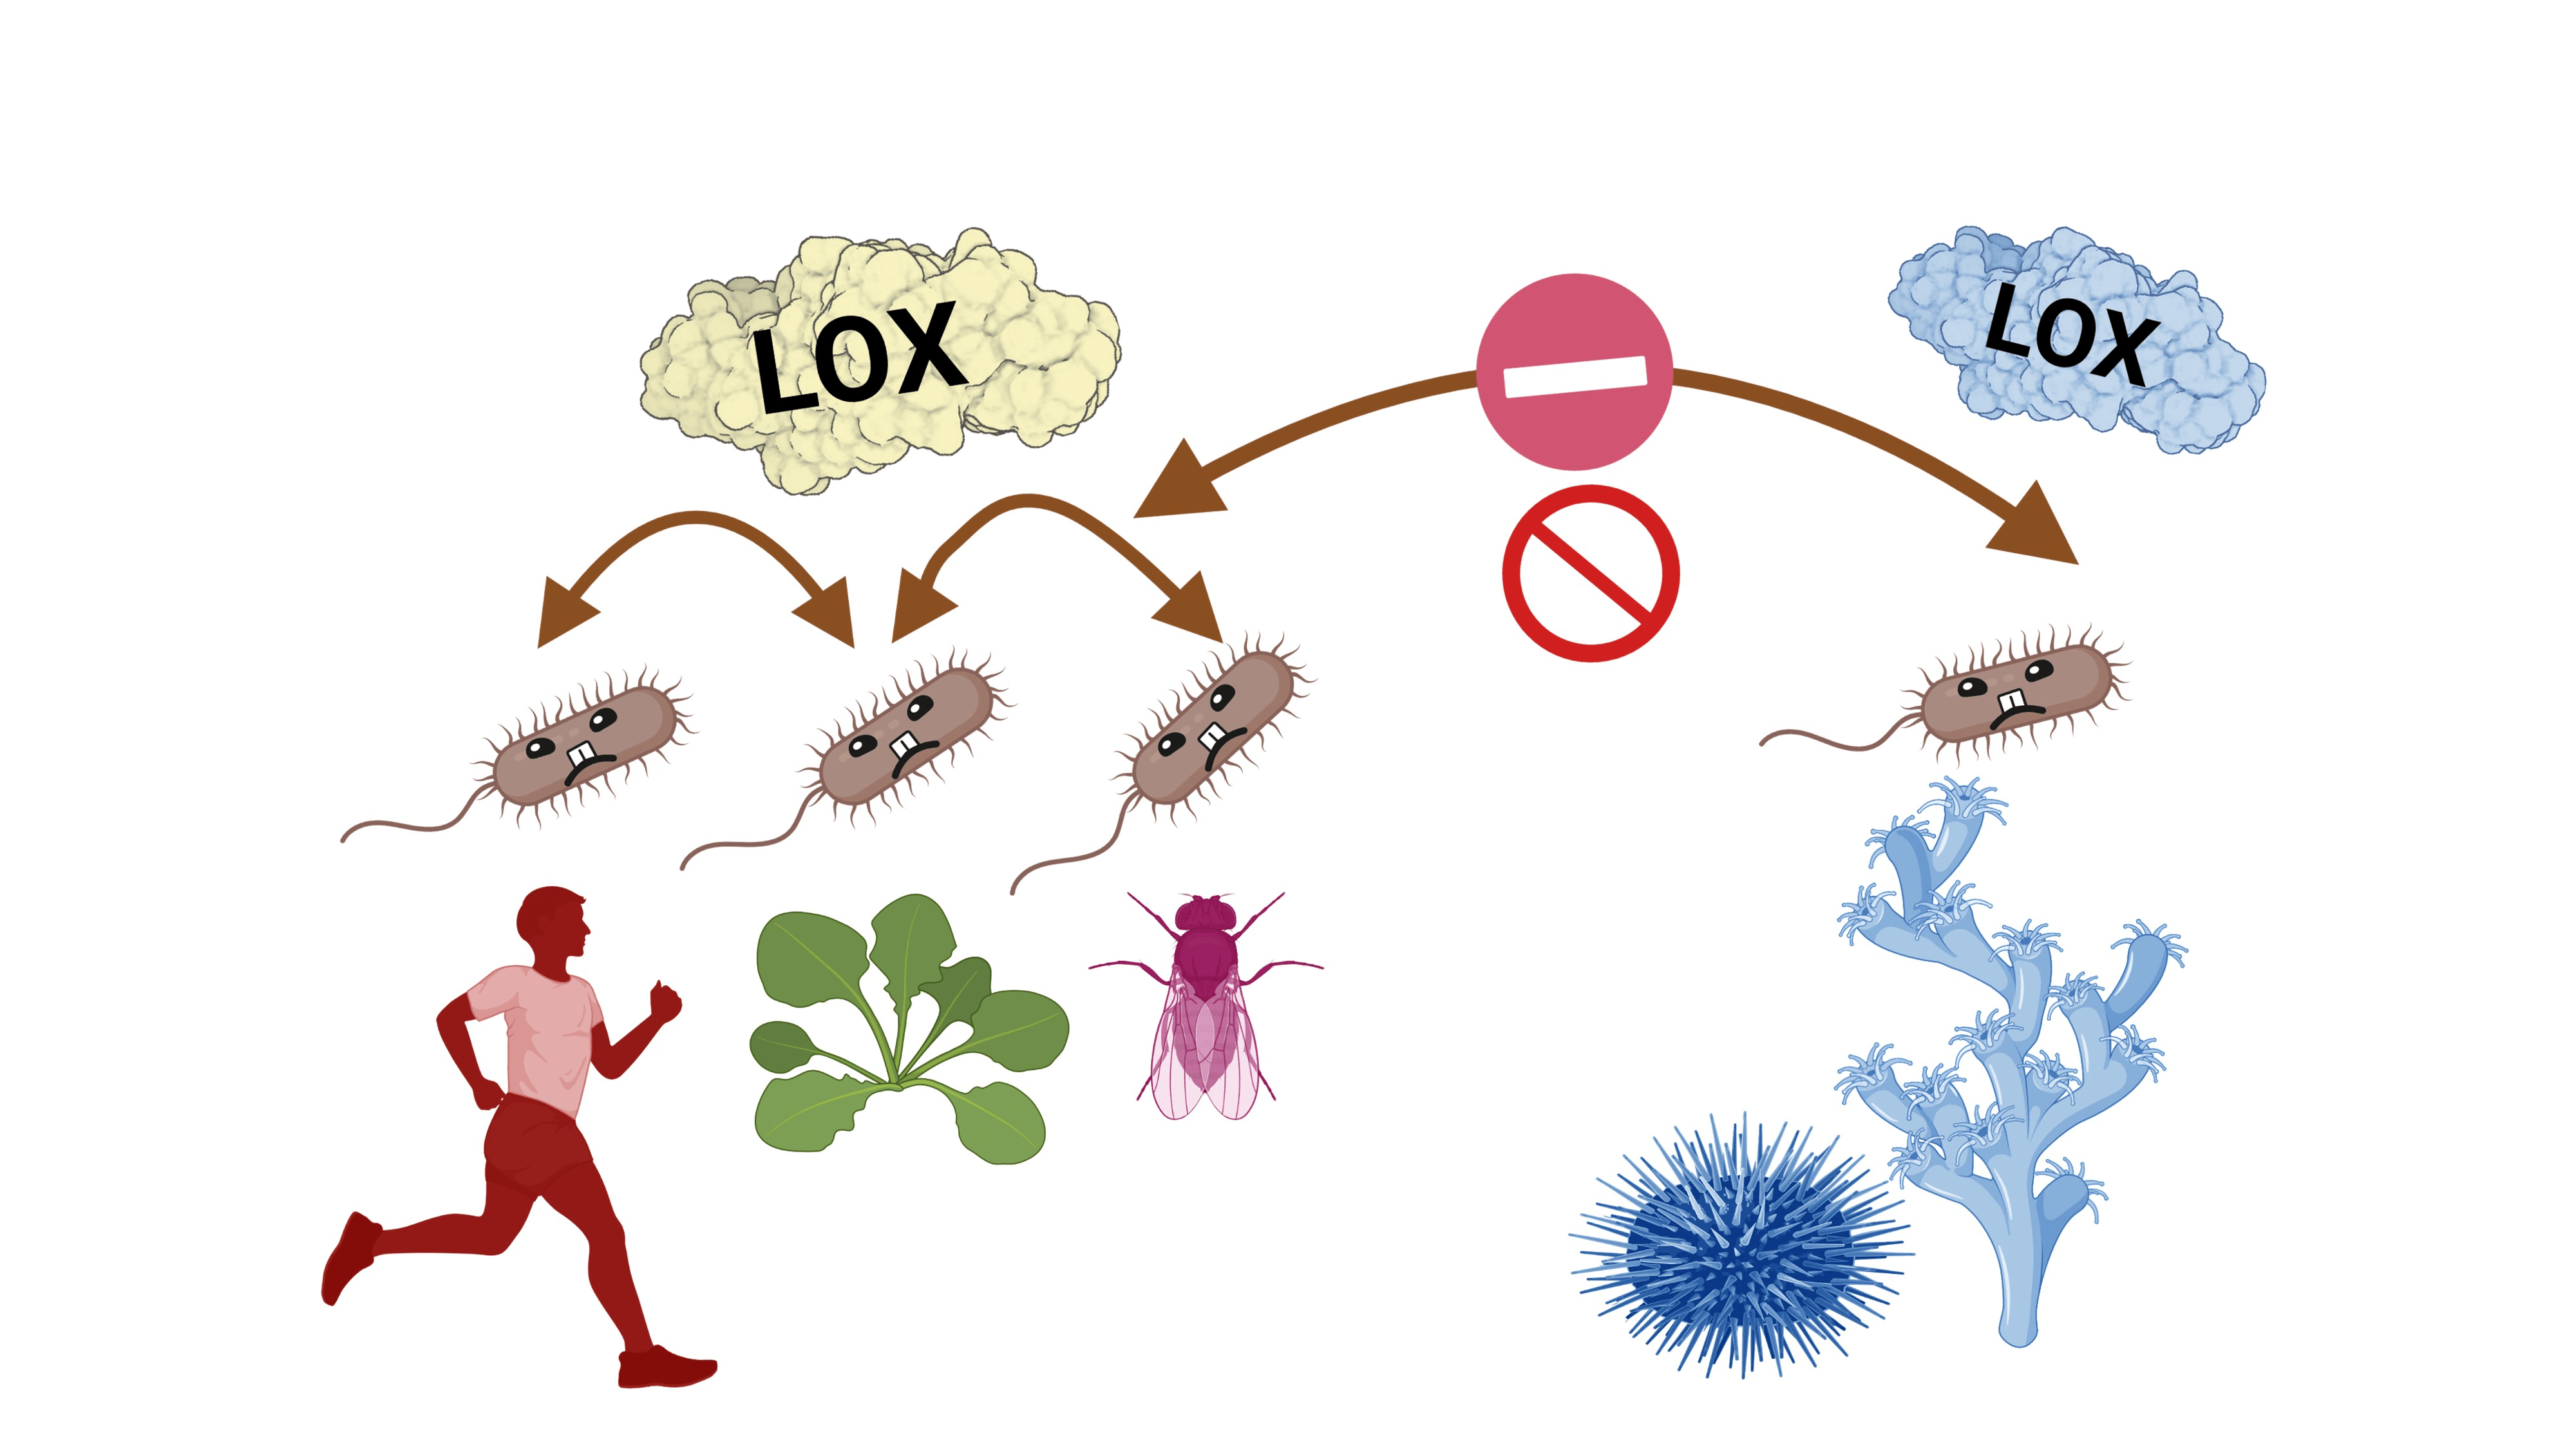 Гены липоксигеназы в ходе эволюции ведут себя так же, как сами бактерии